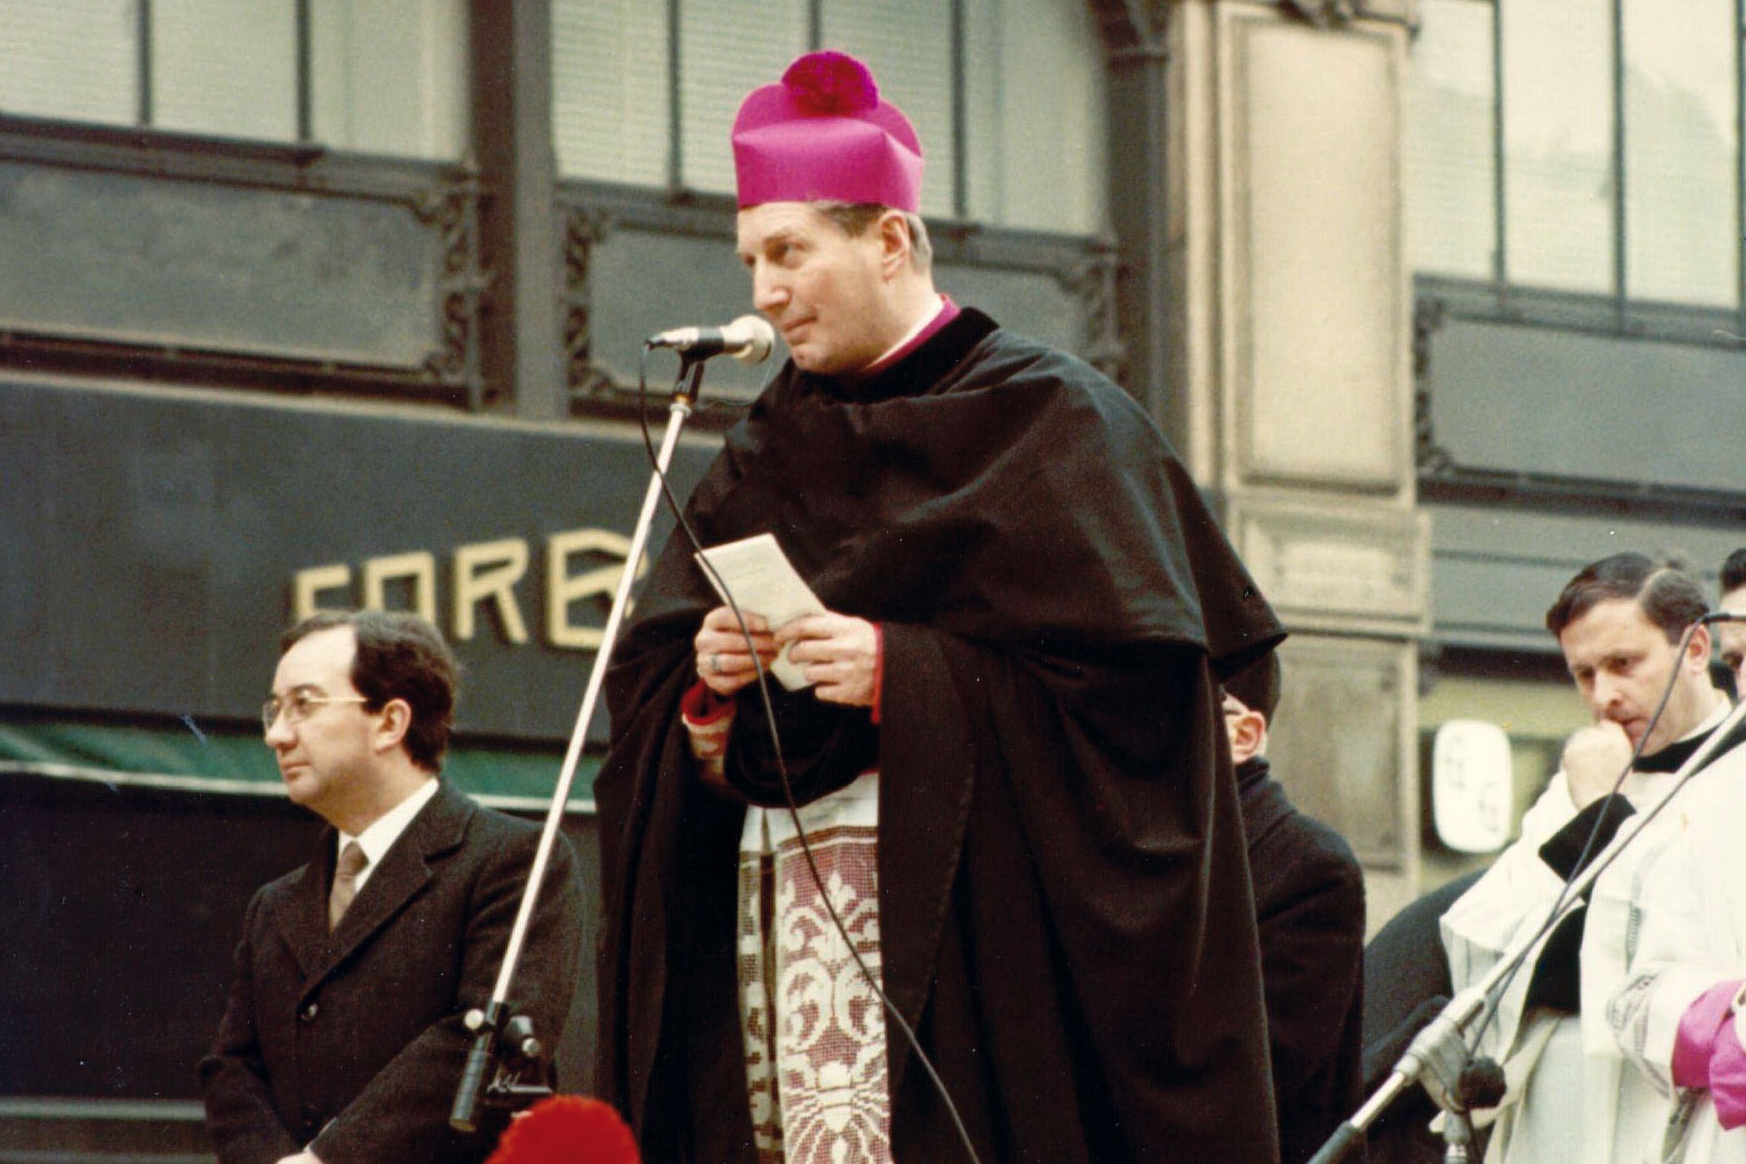 Il giovane don Erminio De Scalzi alle spalle dell’Arcivescovo durante il saluto alla cittadinanza in piazza Cordusio